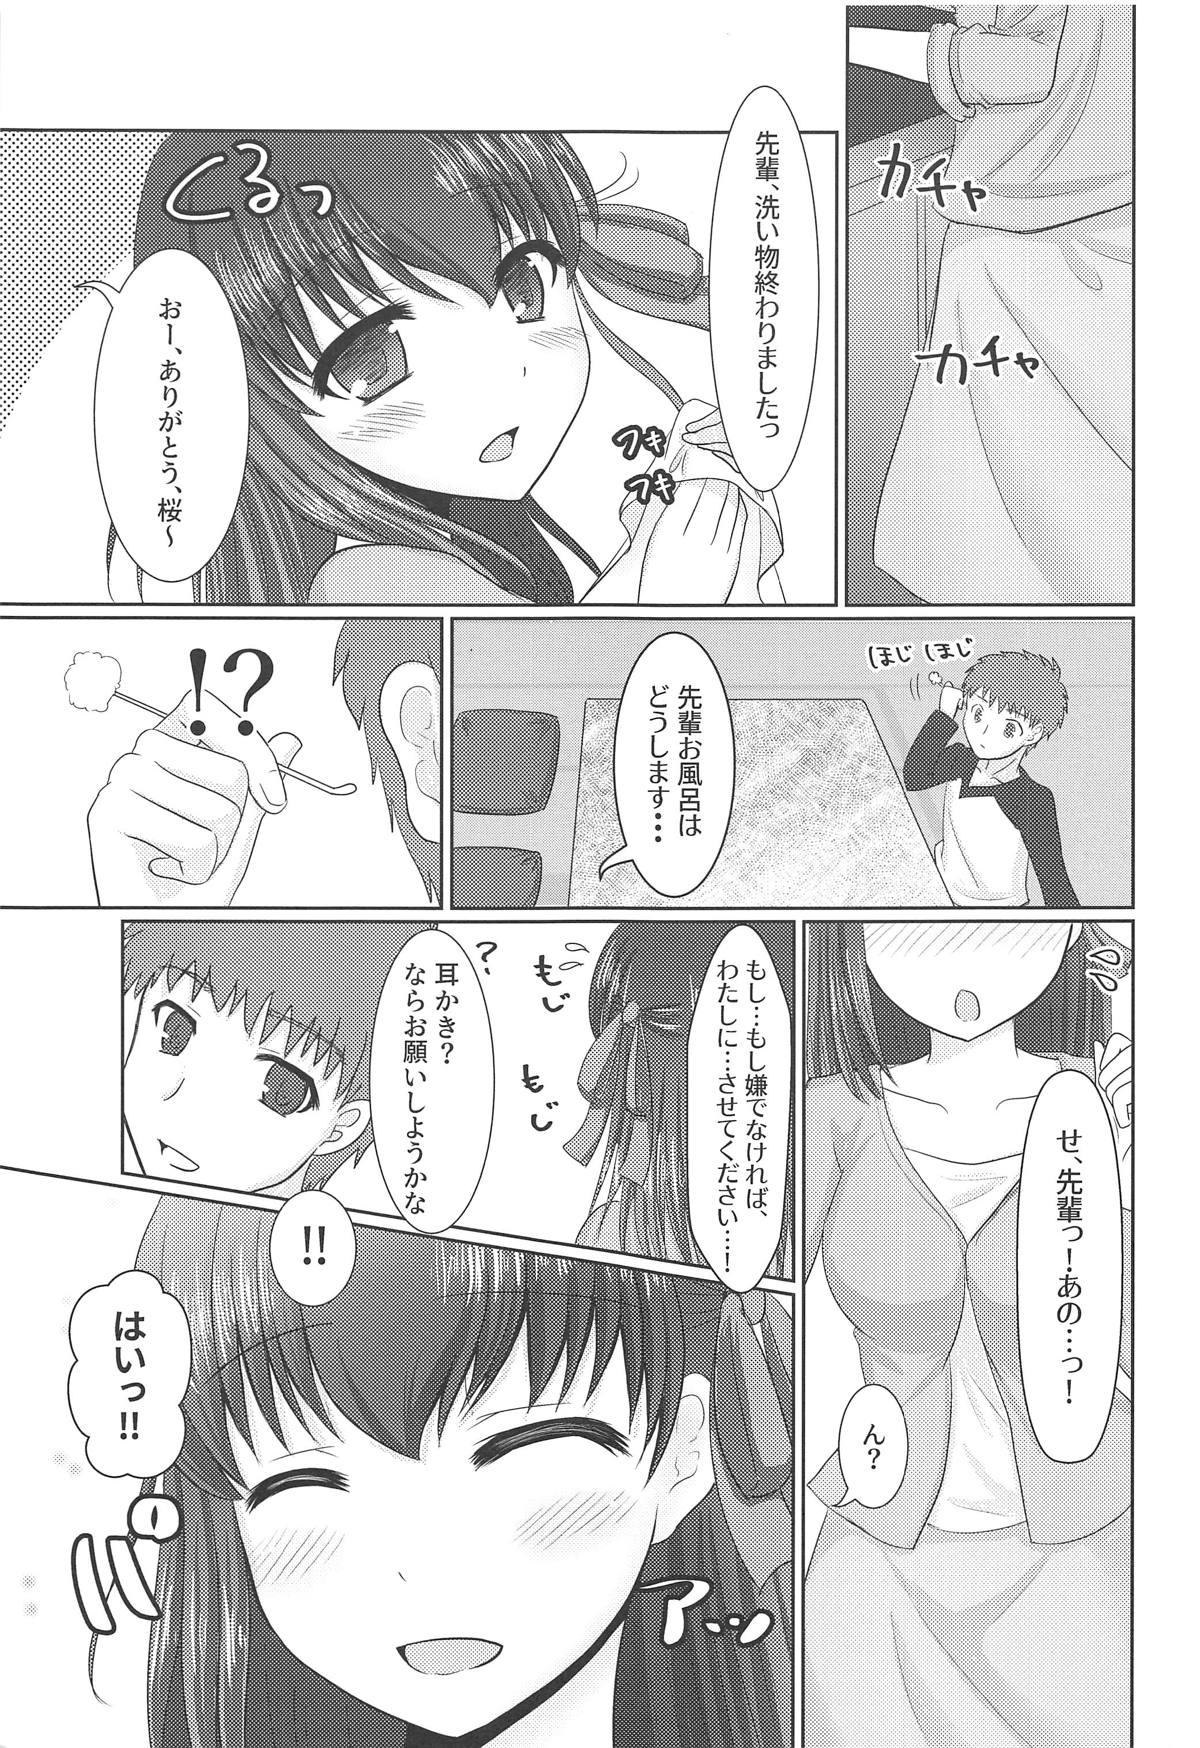 Dotado Hiza no Ue ni Sakura - Fate stay night Hunks - Page 4